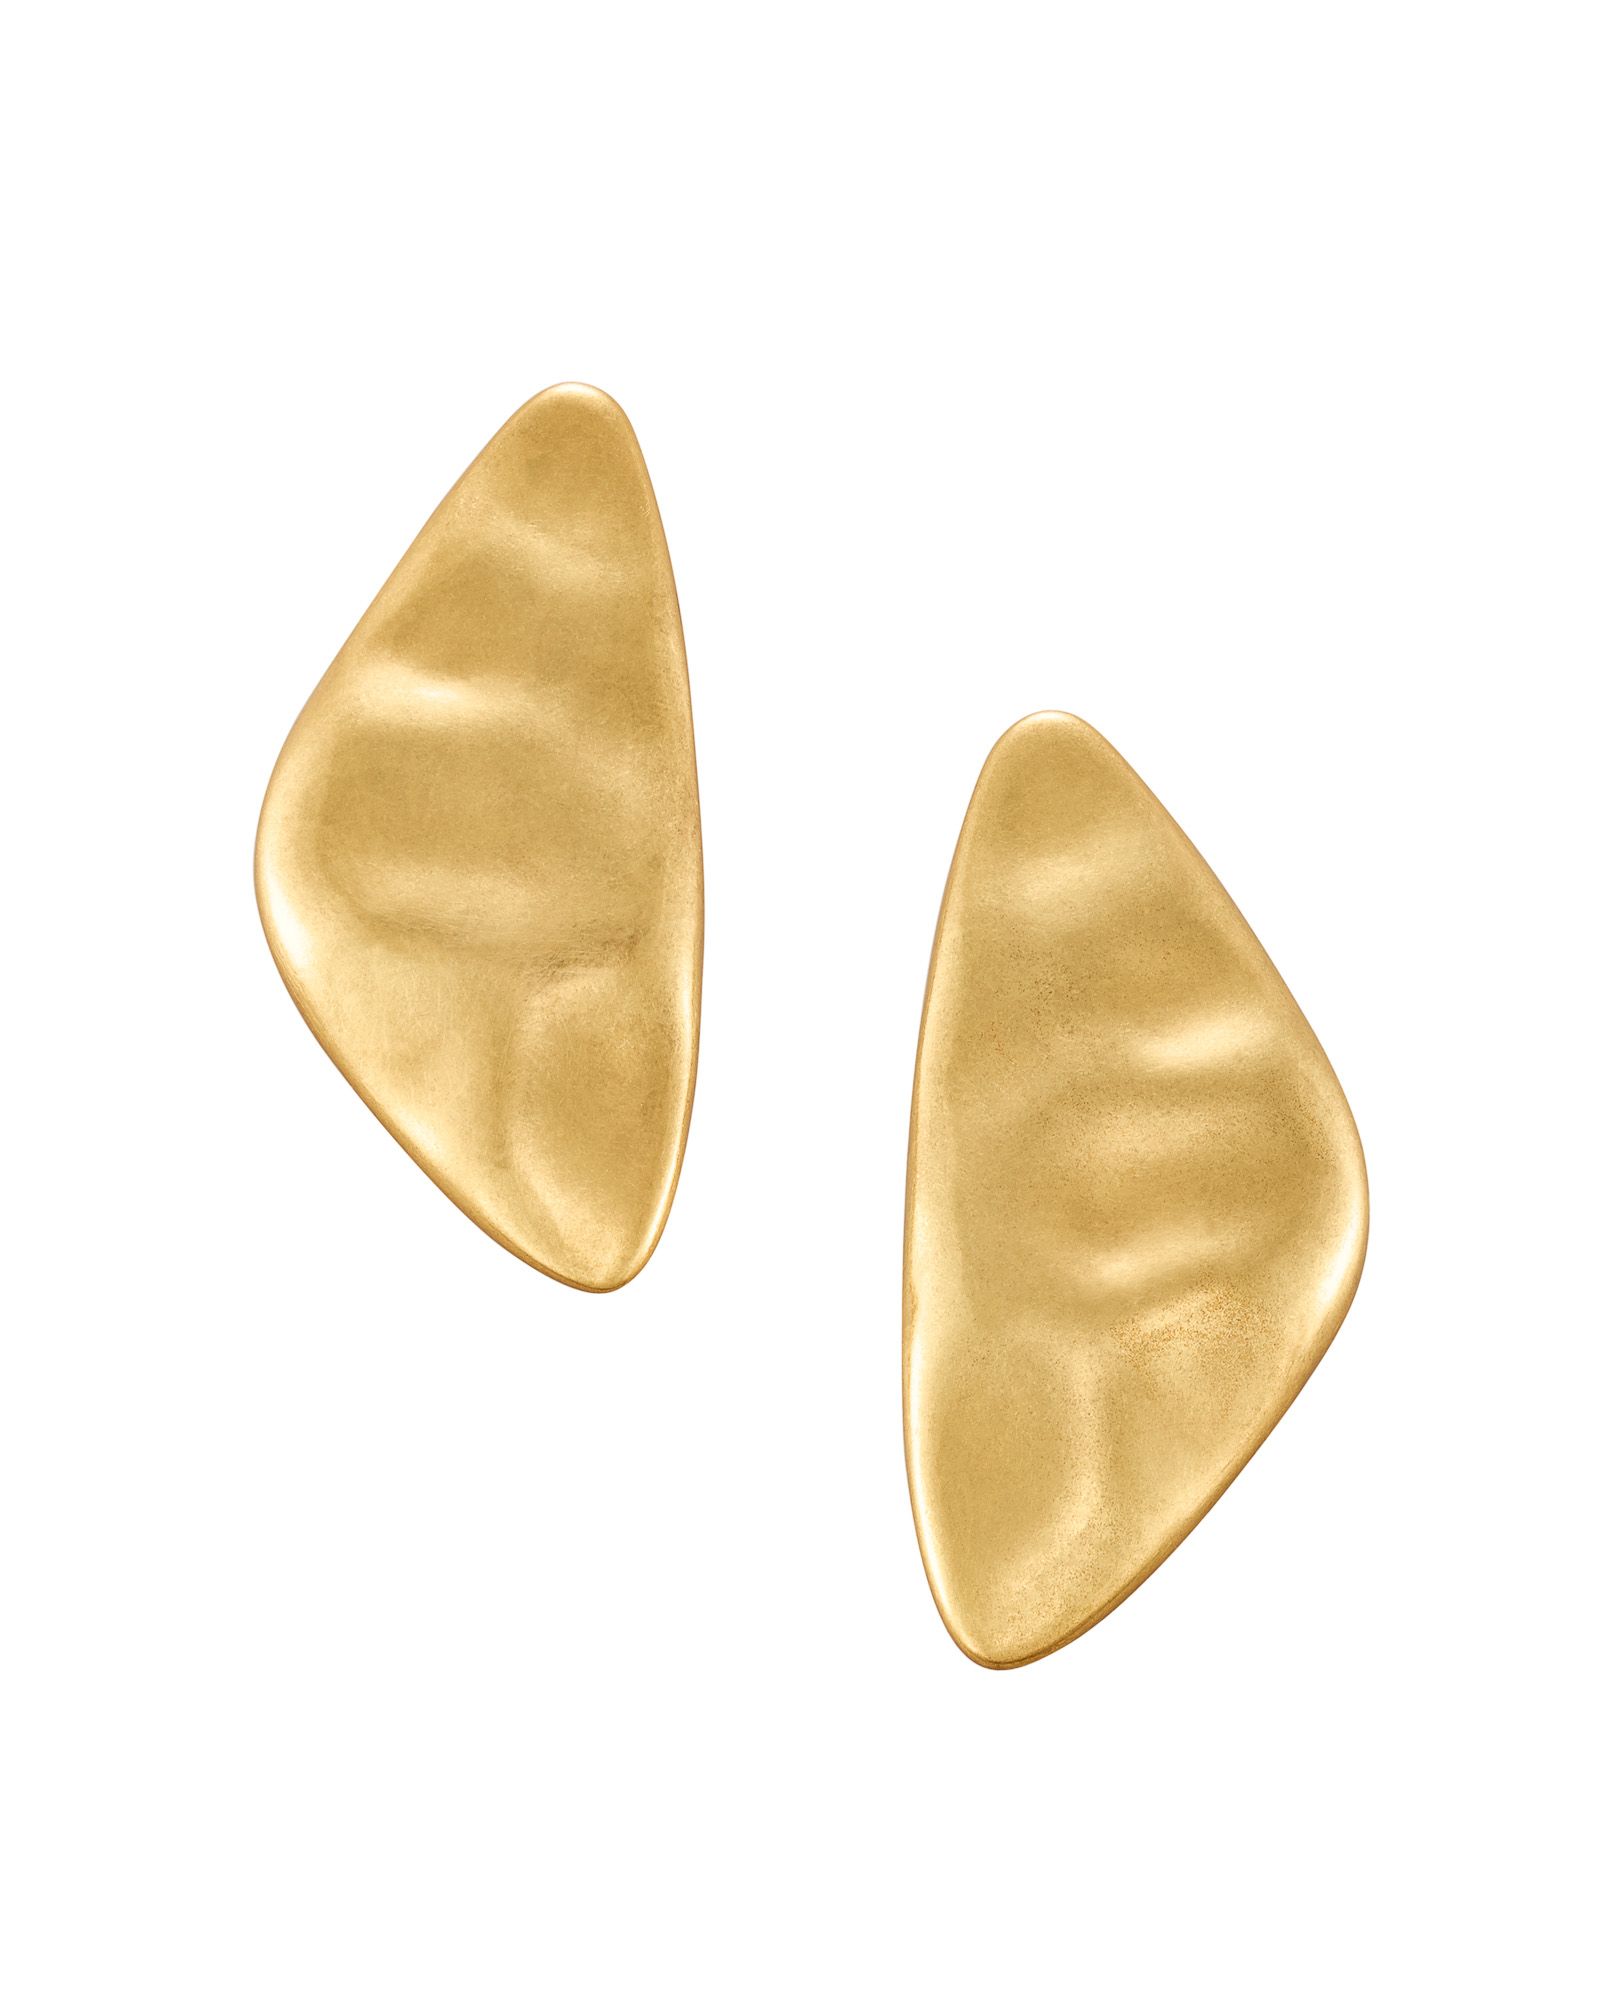 Kira Statement Earrings in Vintage Gold | Kendra Scott